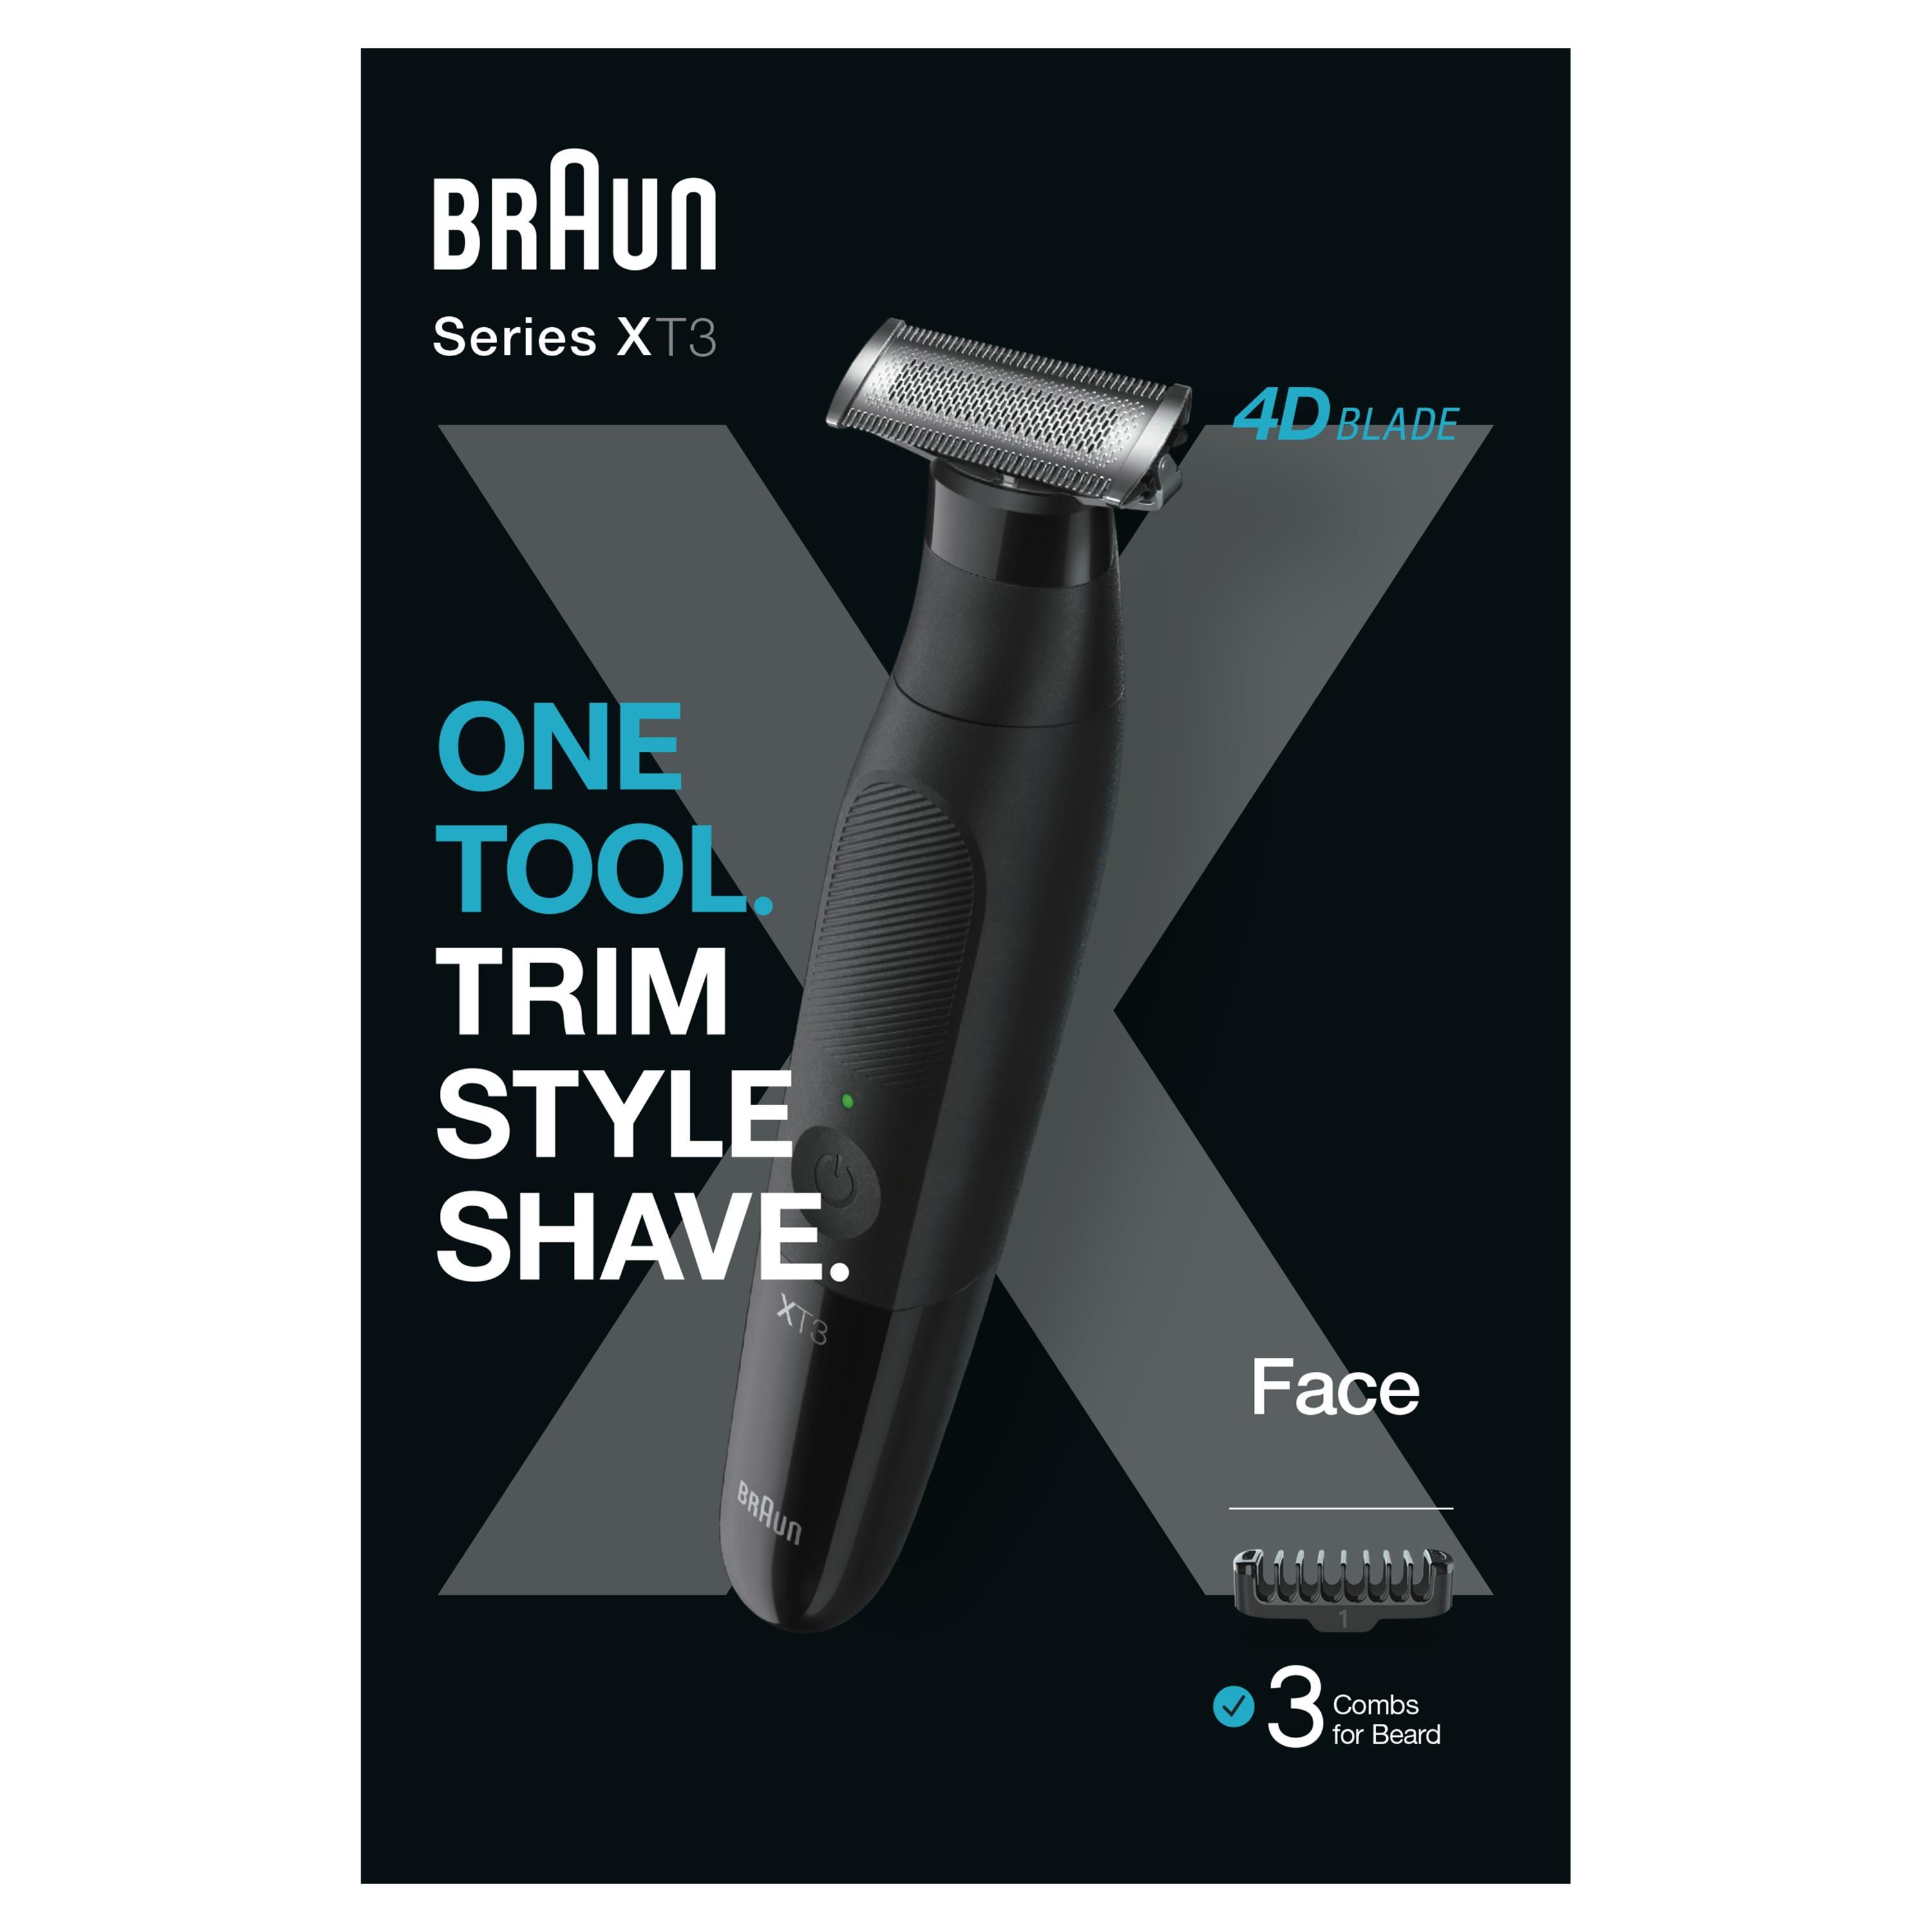 Braun Series 3 Shave&Style 300BT Rasoio Da Barba Elettrico Da Uomo